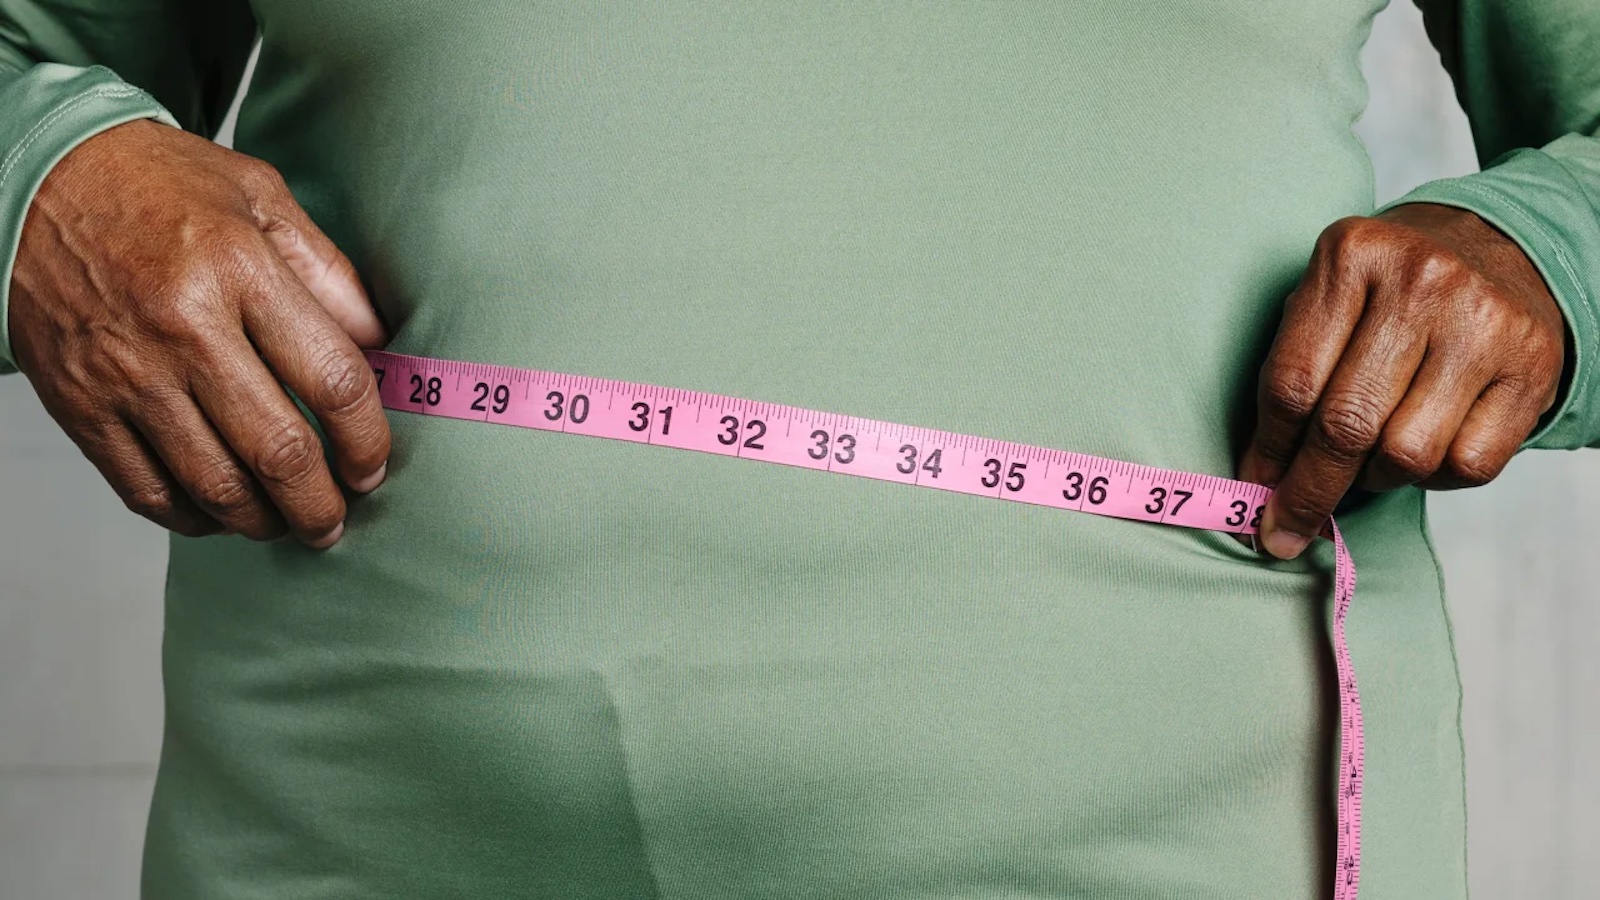 Uno studio ha dimostrato che perdere peso può mettere gli anziani a rischio di morte